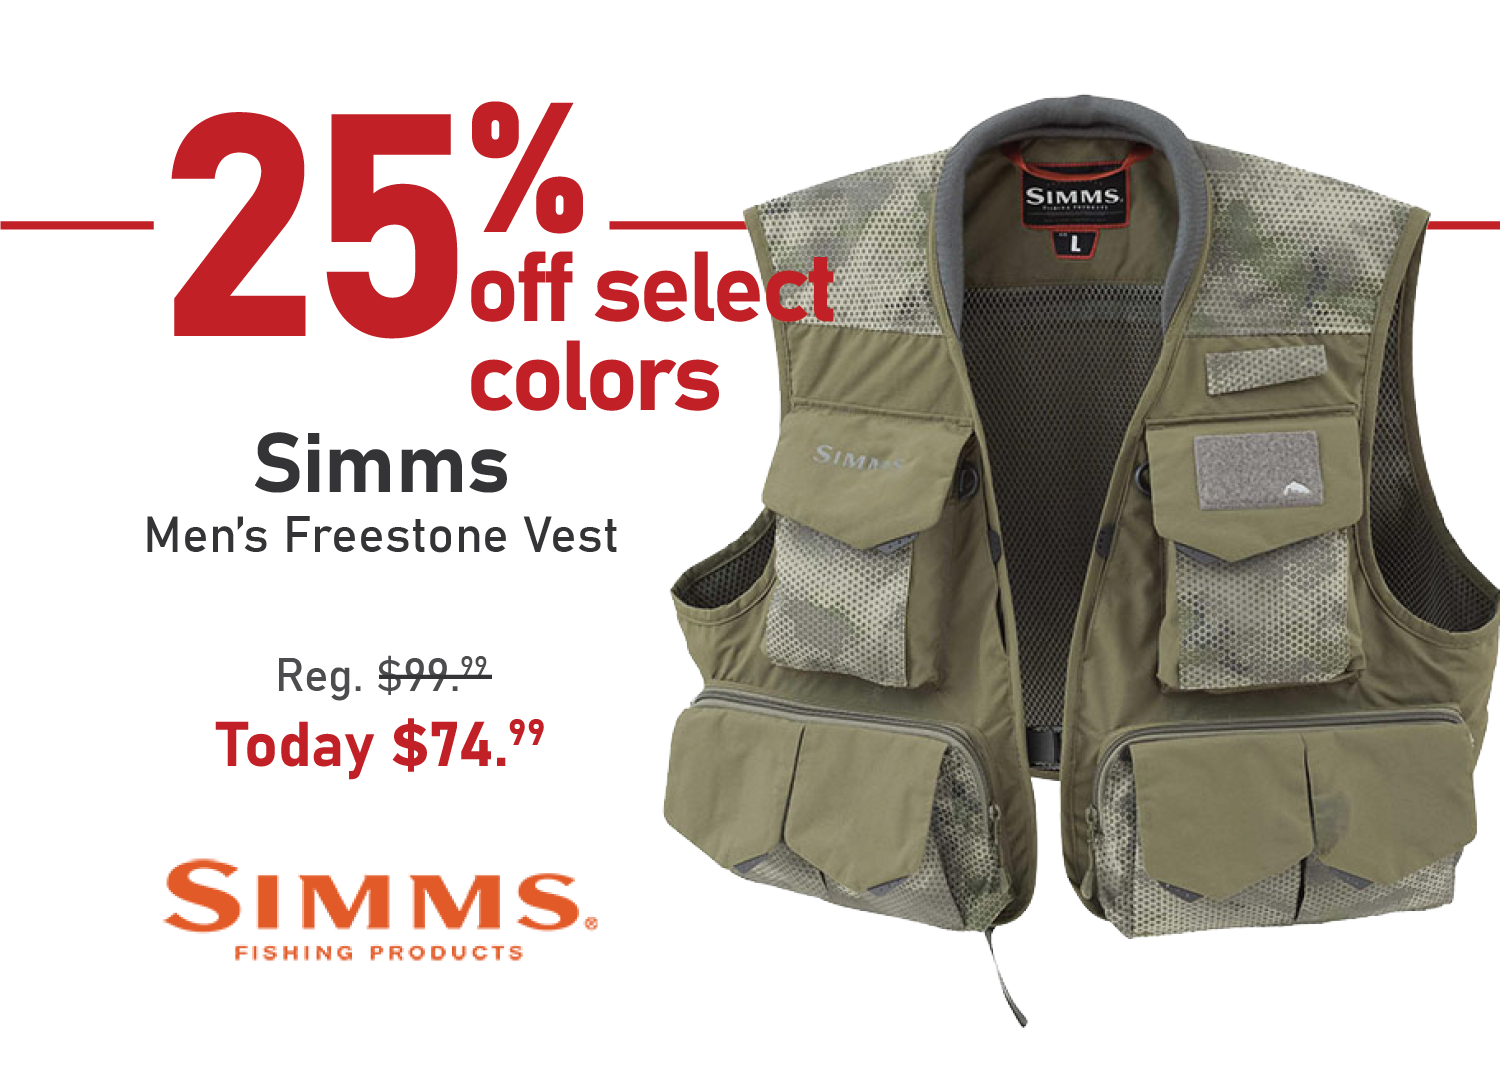 Take 25% off the Simms Men's Freestone Vest